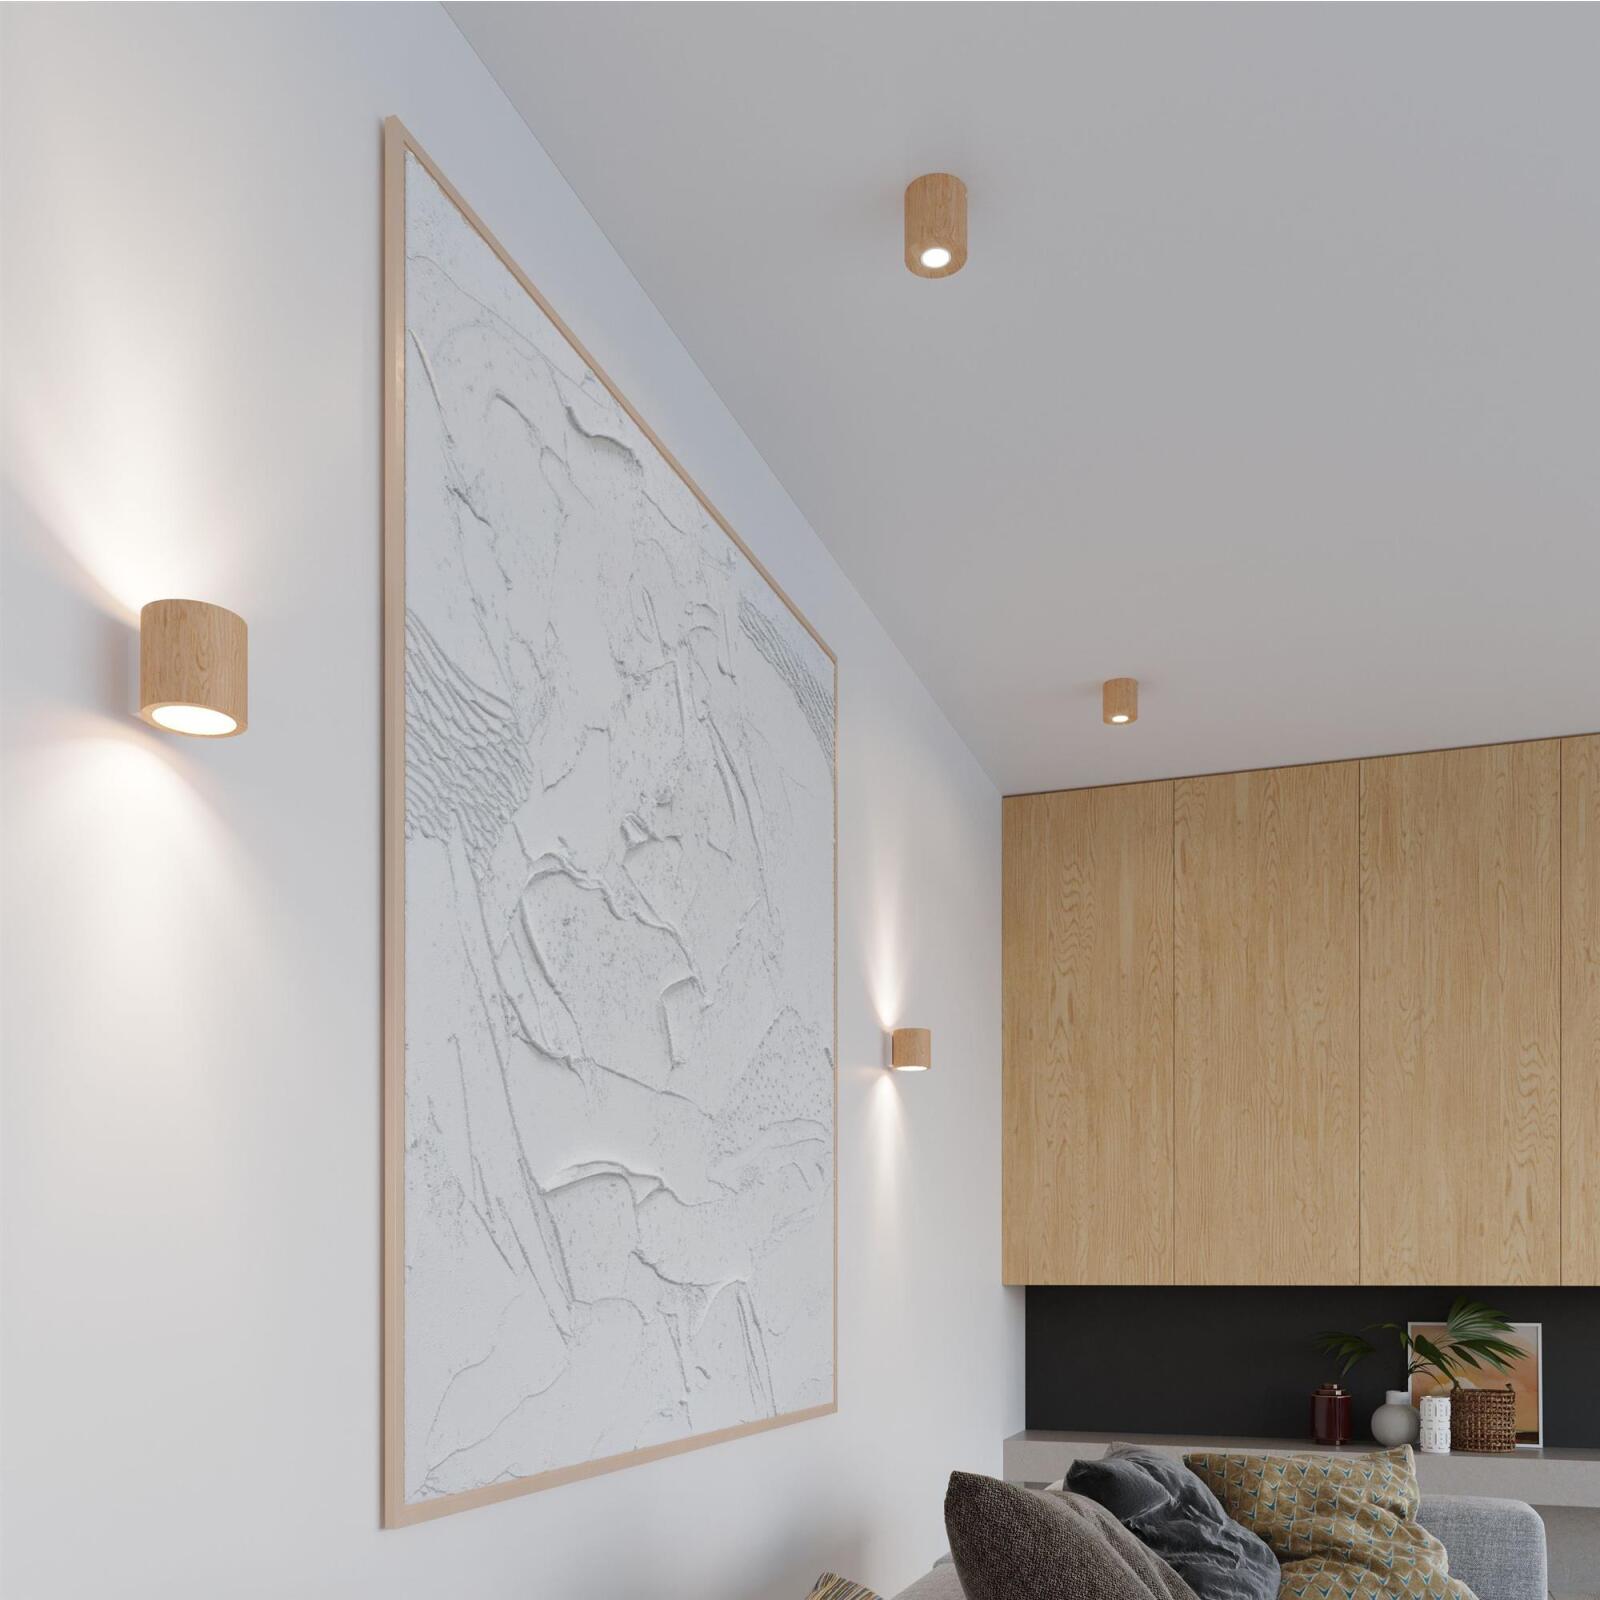 Deckenleuchte Lampen Holz aus rund GU10 Leuchten & Onlineshop Orbis natur - 1x 10cm